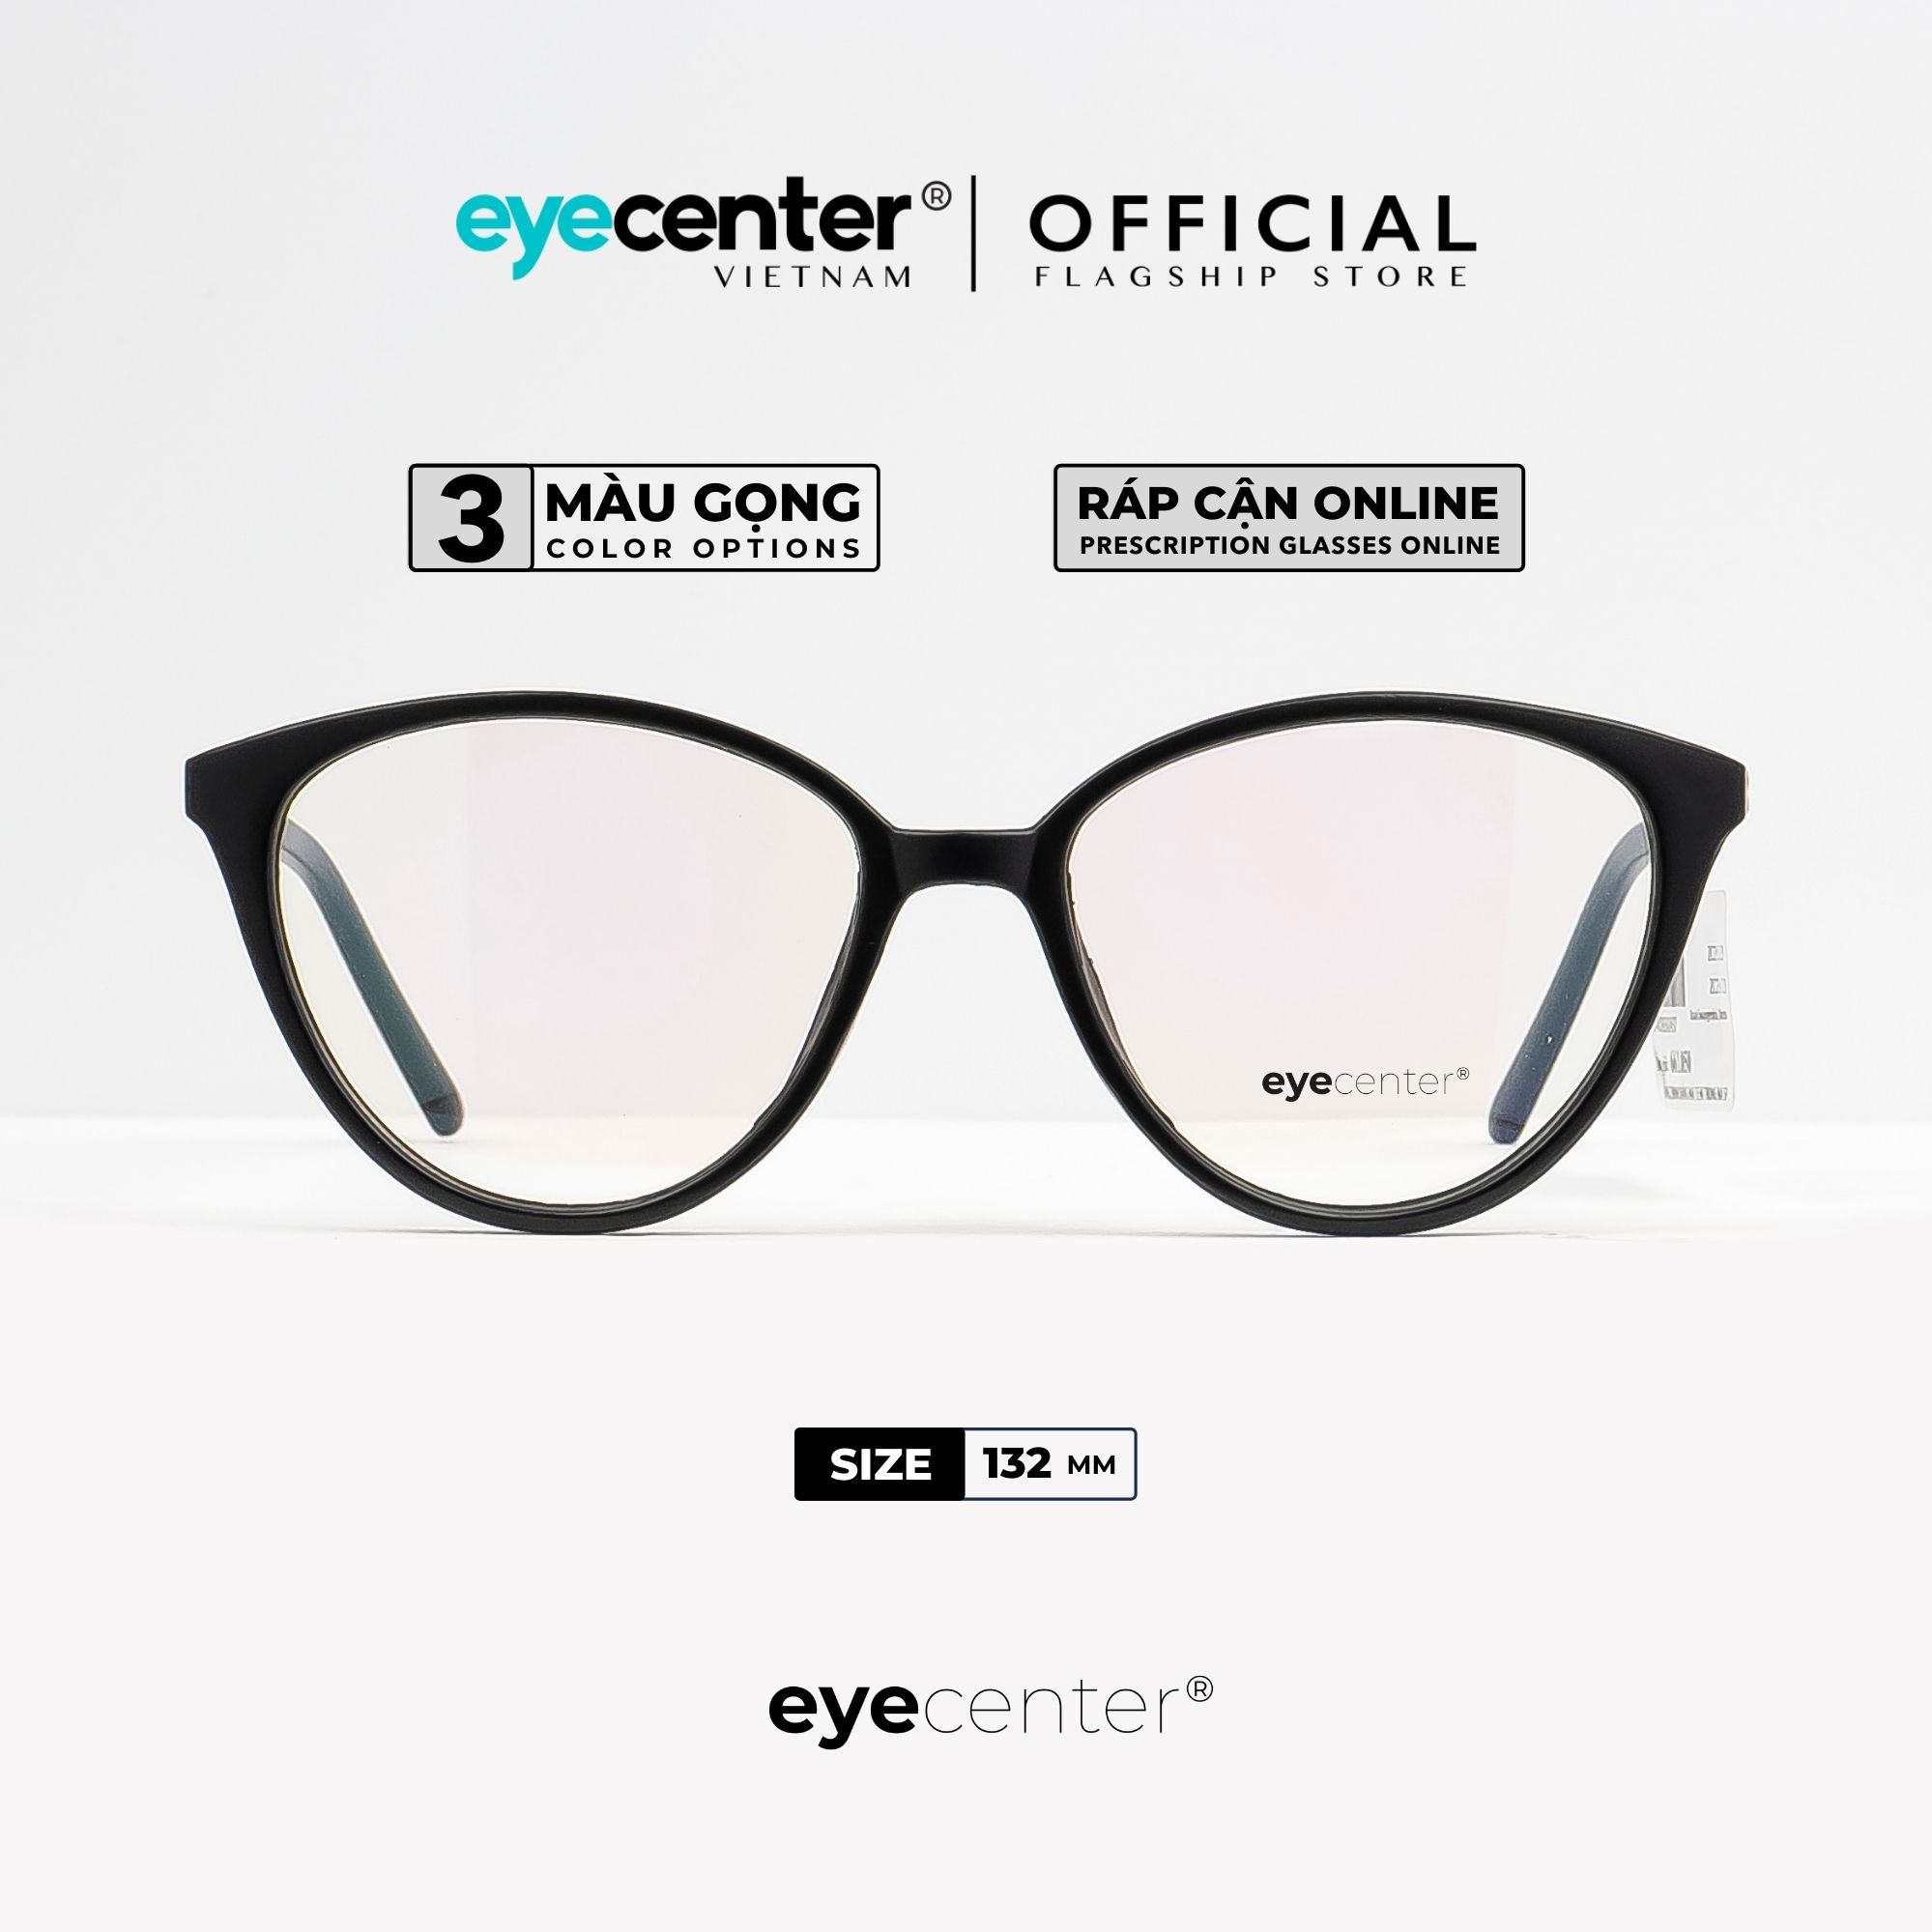 Gọng kính nữ mắt mèo chính hãng EYECENTER K22 nhựa dẻo siêu nhẹ nhập khẩu by Eye Center Vietnam